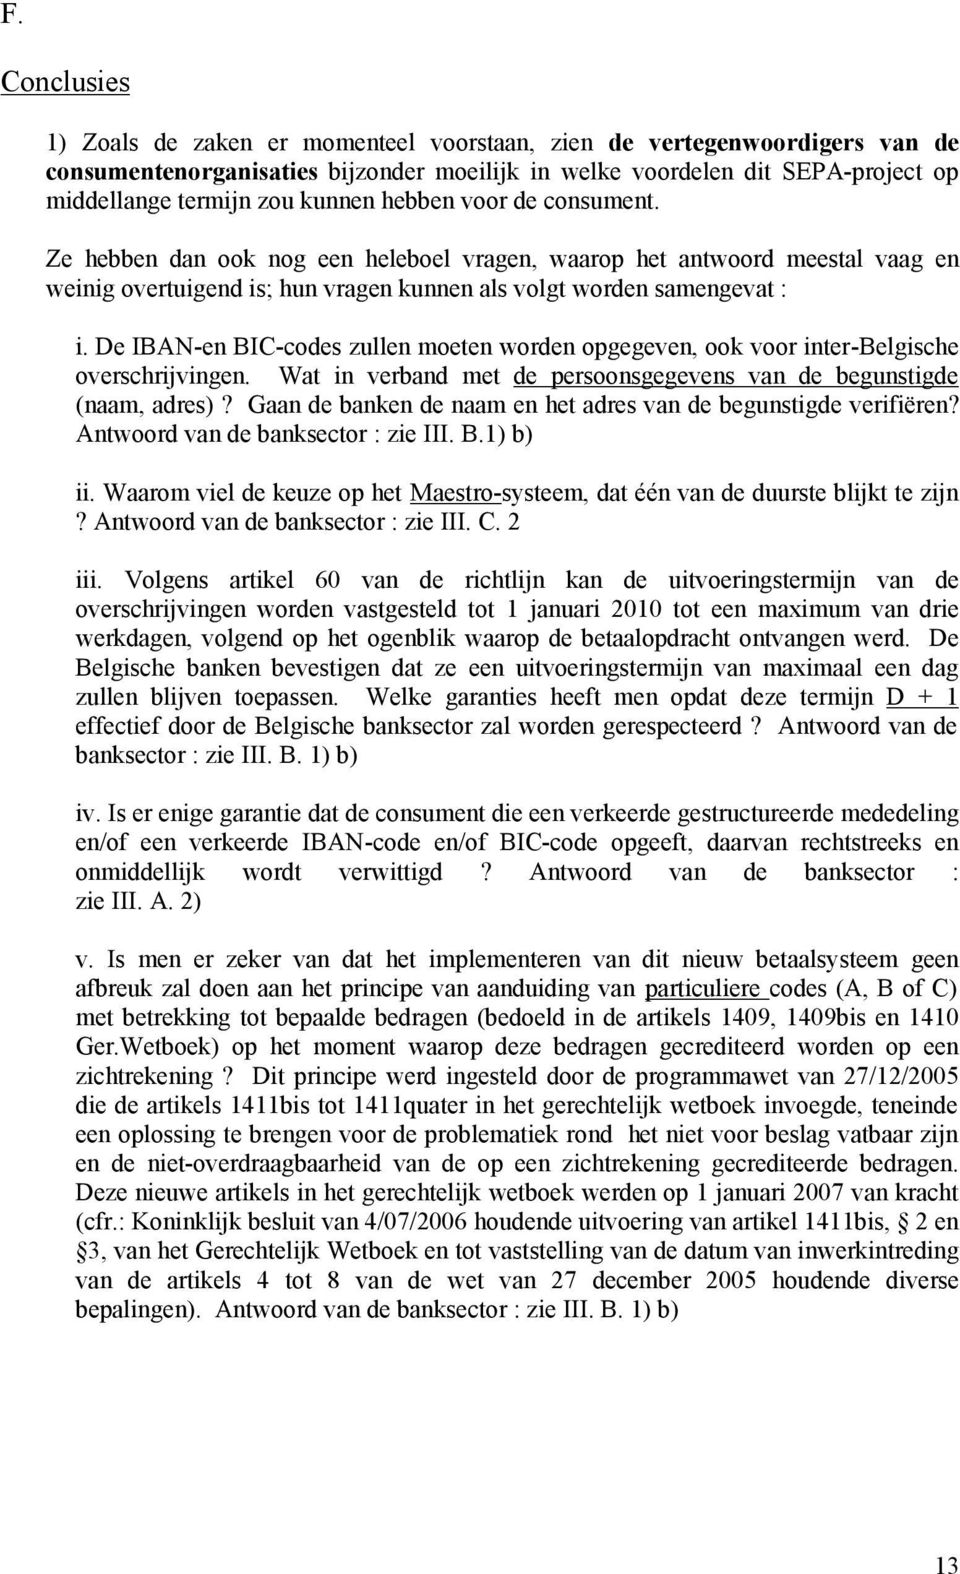 De IBAN-en BIC-codes zullen moeten worden opgegeven, ook voor inter-belgische overschrijvingen. Wat in verband met de persoonsgegevens van de begunstigde (naam, adres)?